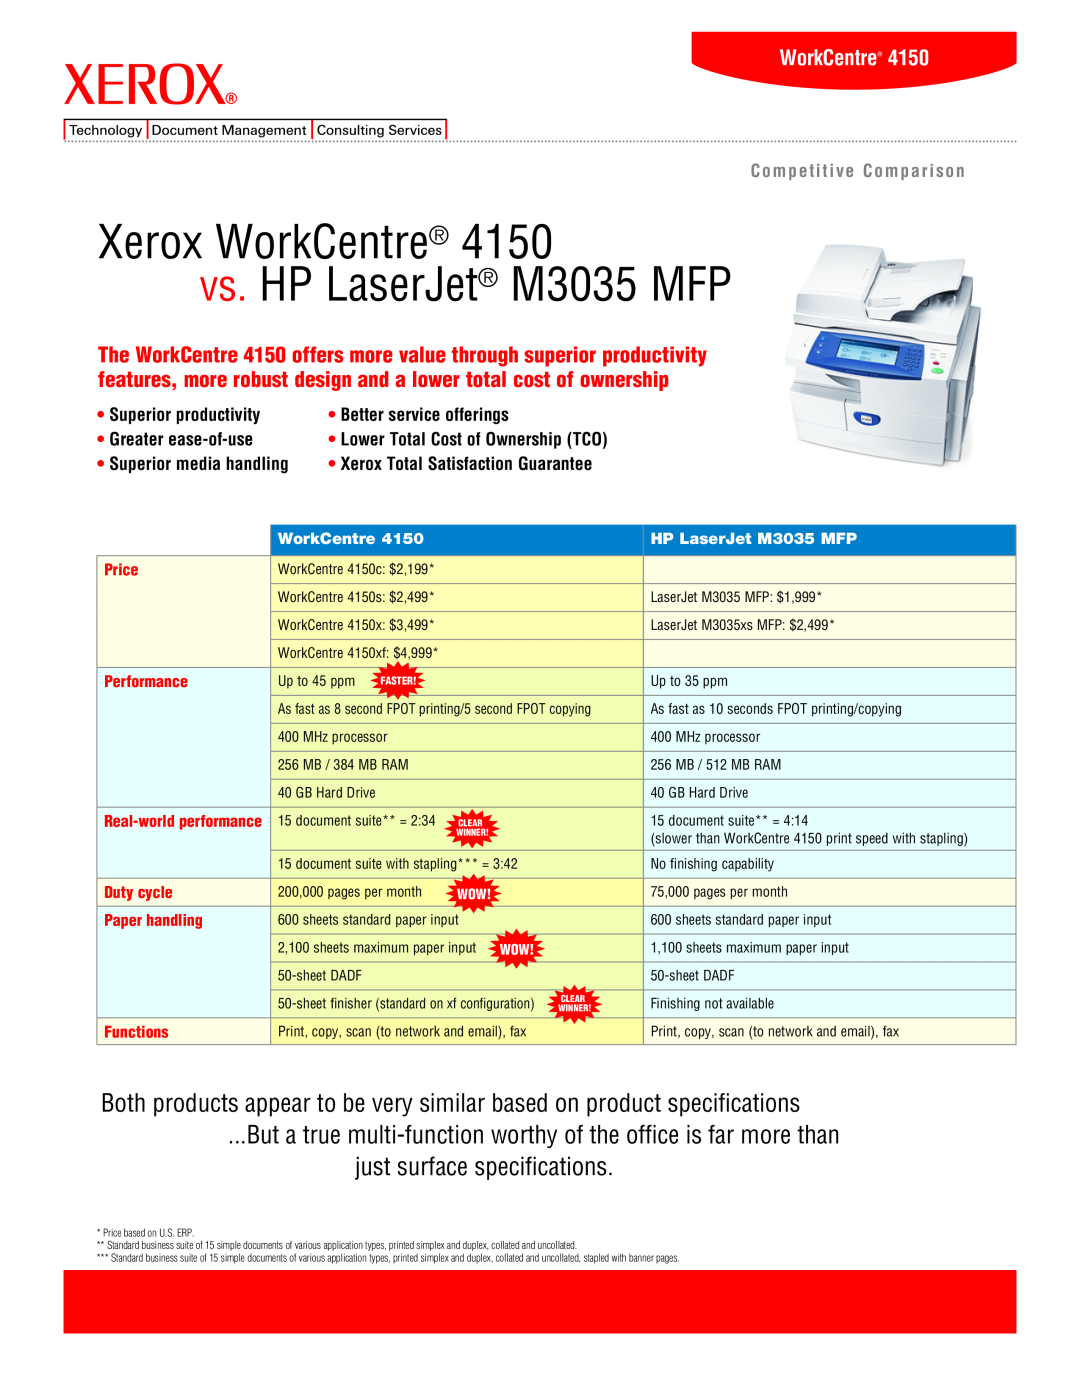 Xerox M3035 MFP specifications Xerox WorkCentre vs. HP LaserJet M3035 mfp 